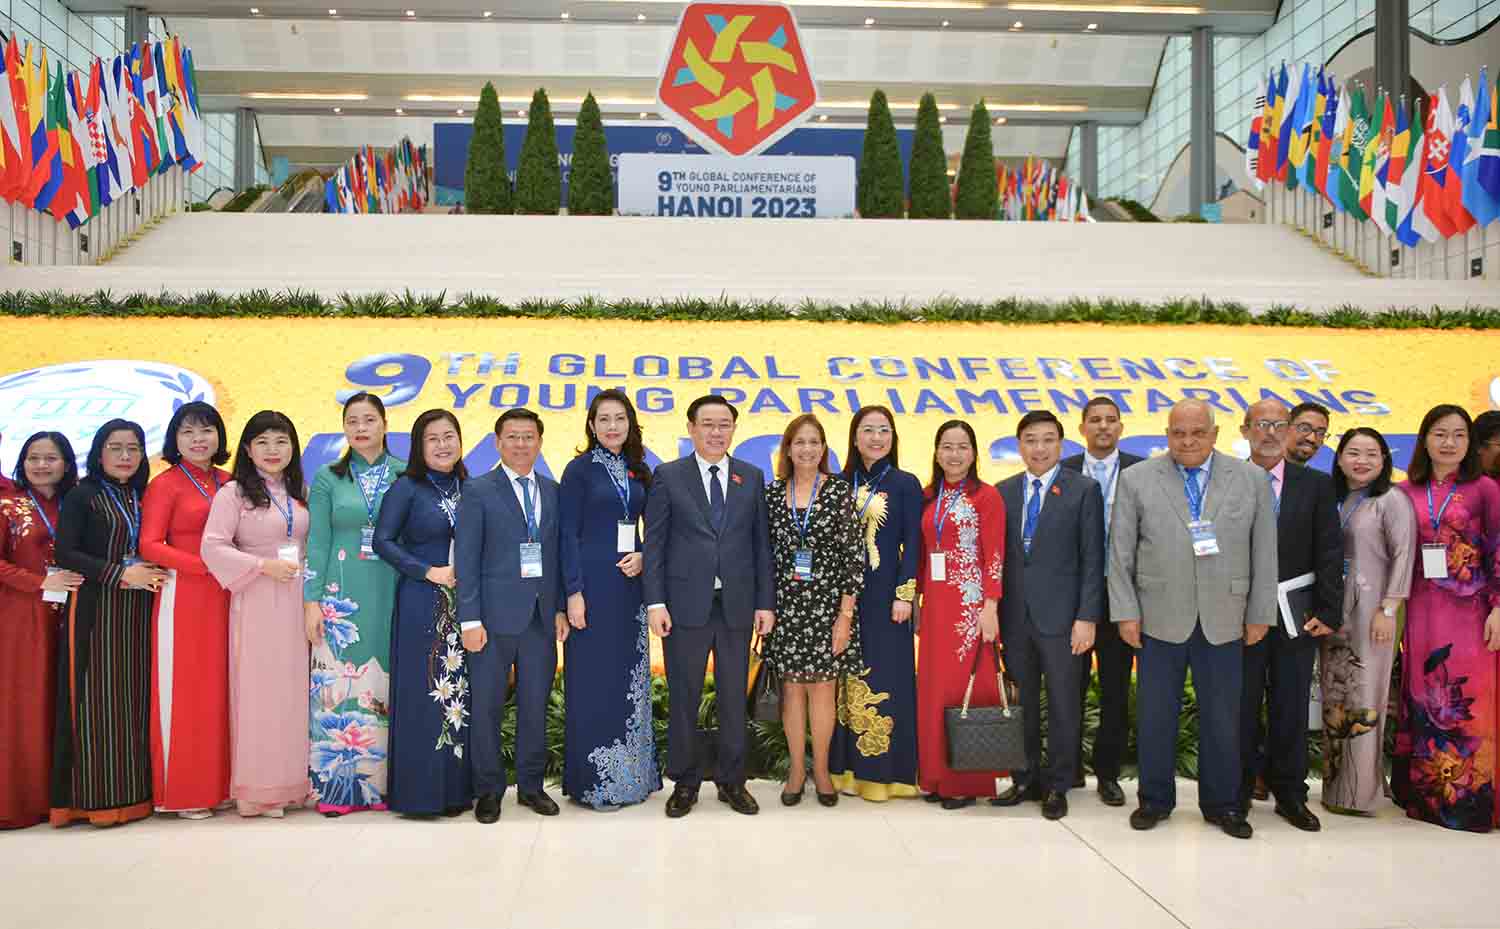 Chủ tịch Quốc hội Vương Đình Huệ cùng các đại biểu dự Hội nghị Nghị sĩ trẻ toàn cầu lần thứ 9. Ảnh: VPQH  